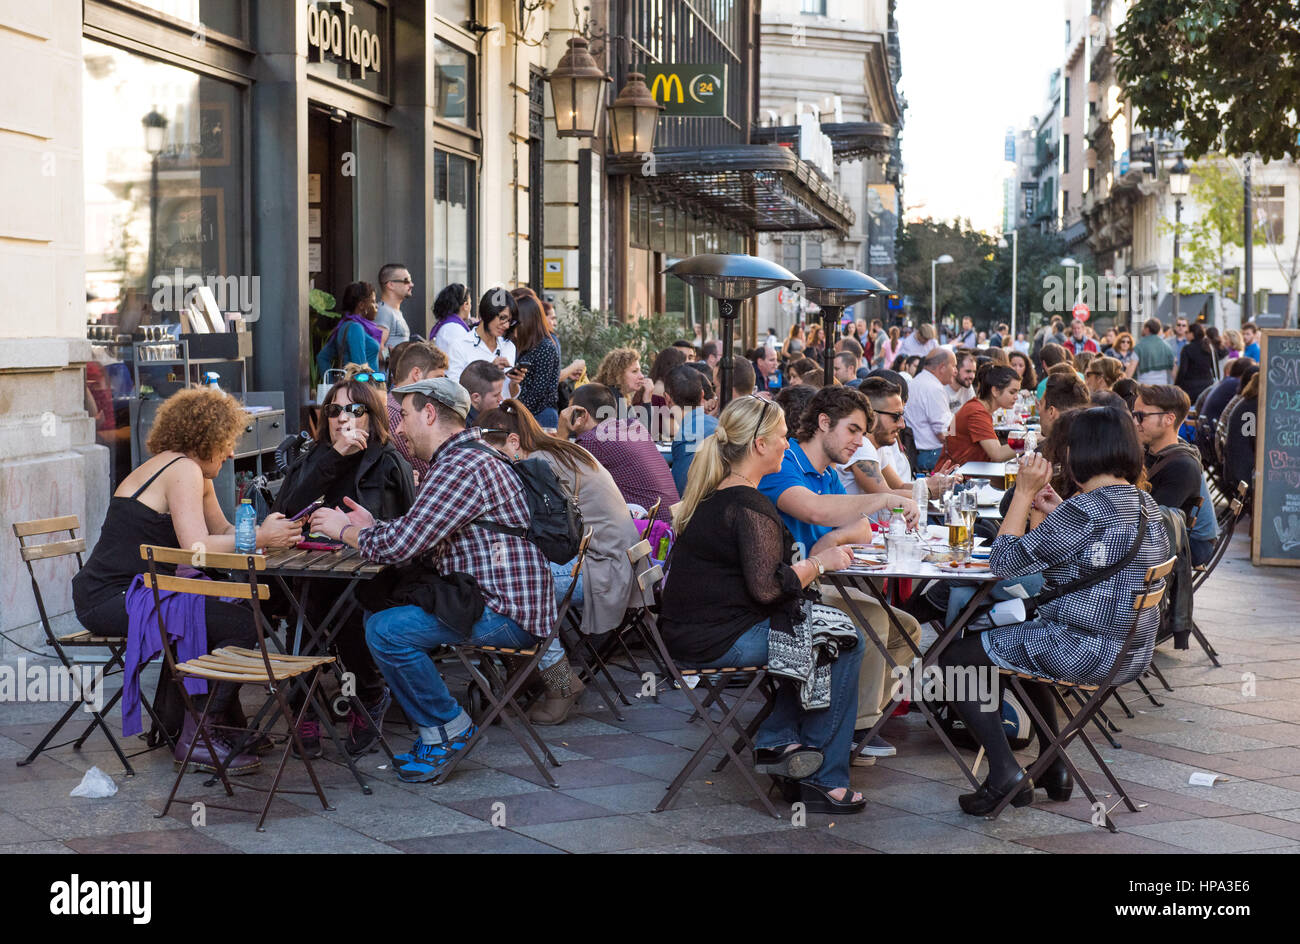 MADRID, Spanien - November 11: Einer der zentralen Straßen, ein kleines Café am 11. November 2015 in Madrid, Spanien Stockfoto